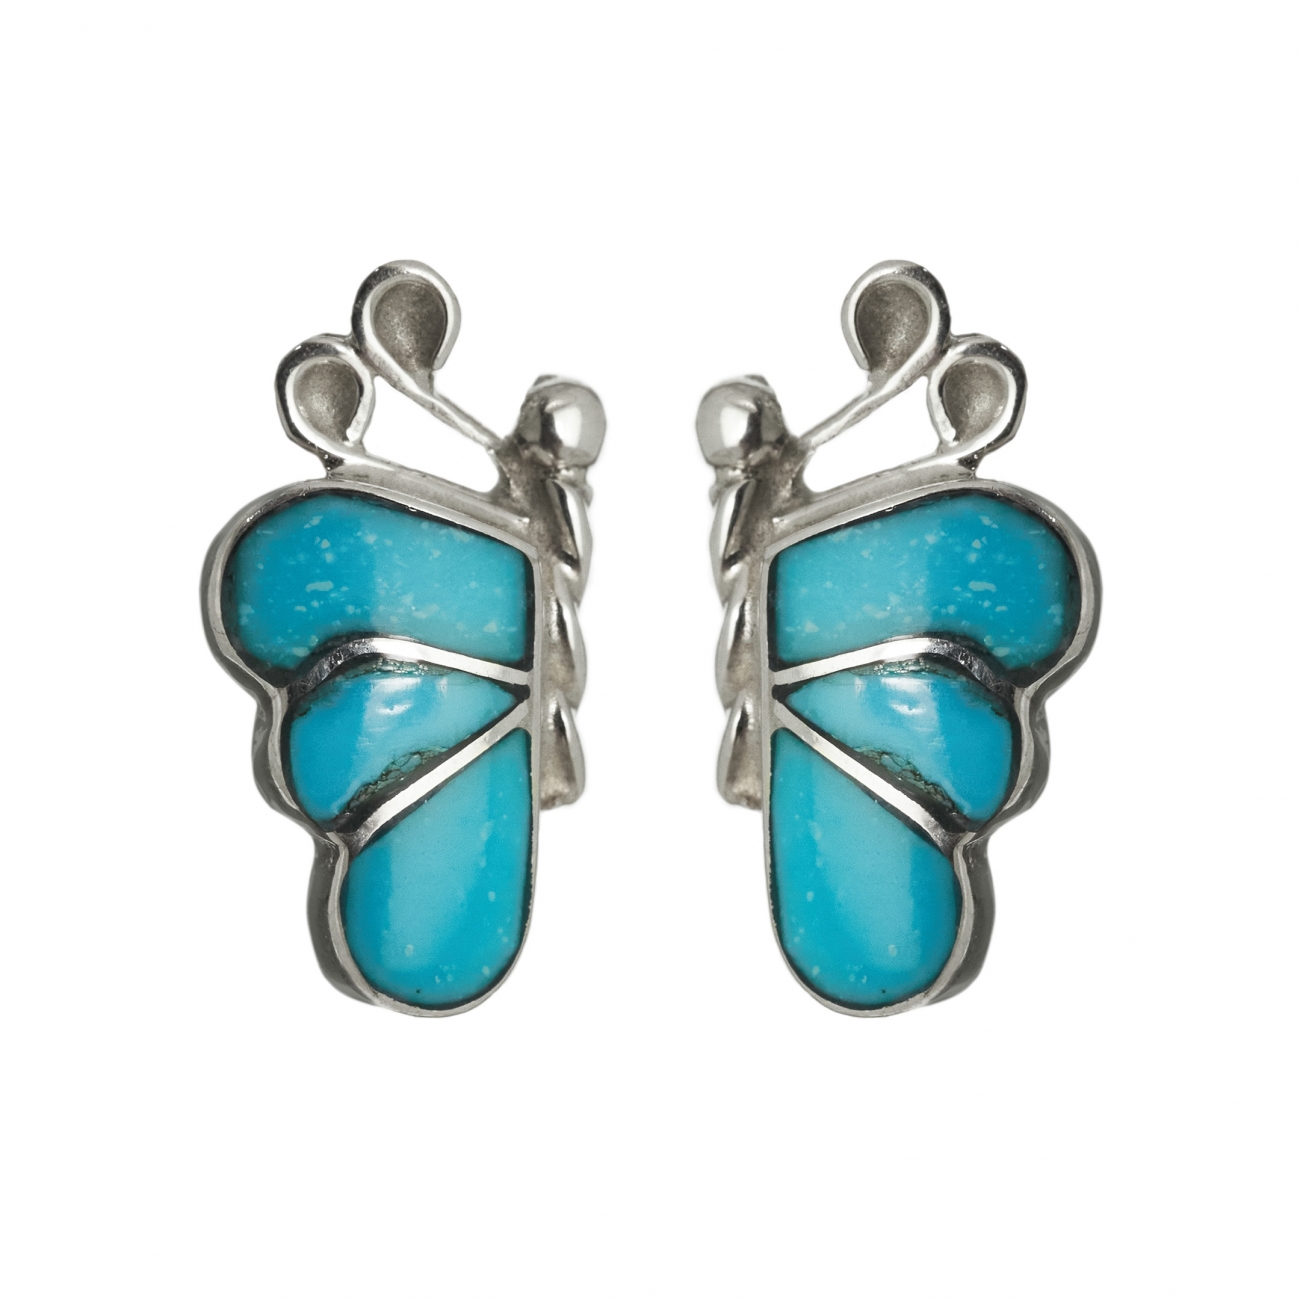 Harpo Paris earrings BO289 turquoise butterfly studs